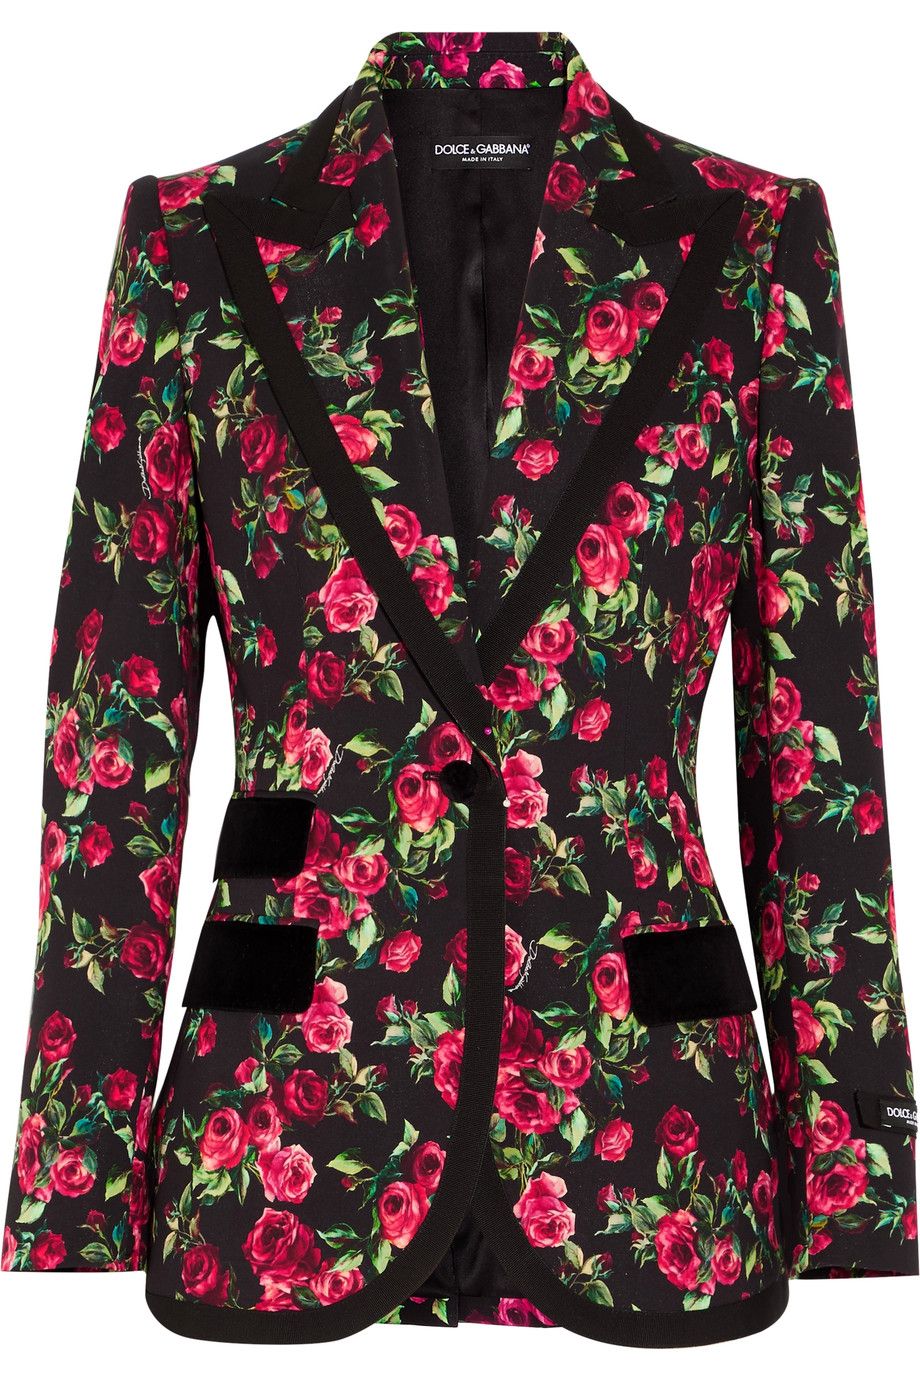 #PopbelaOOTD: Tambah Statement dengan Jaket Floral